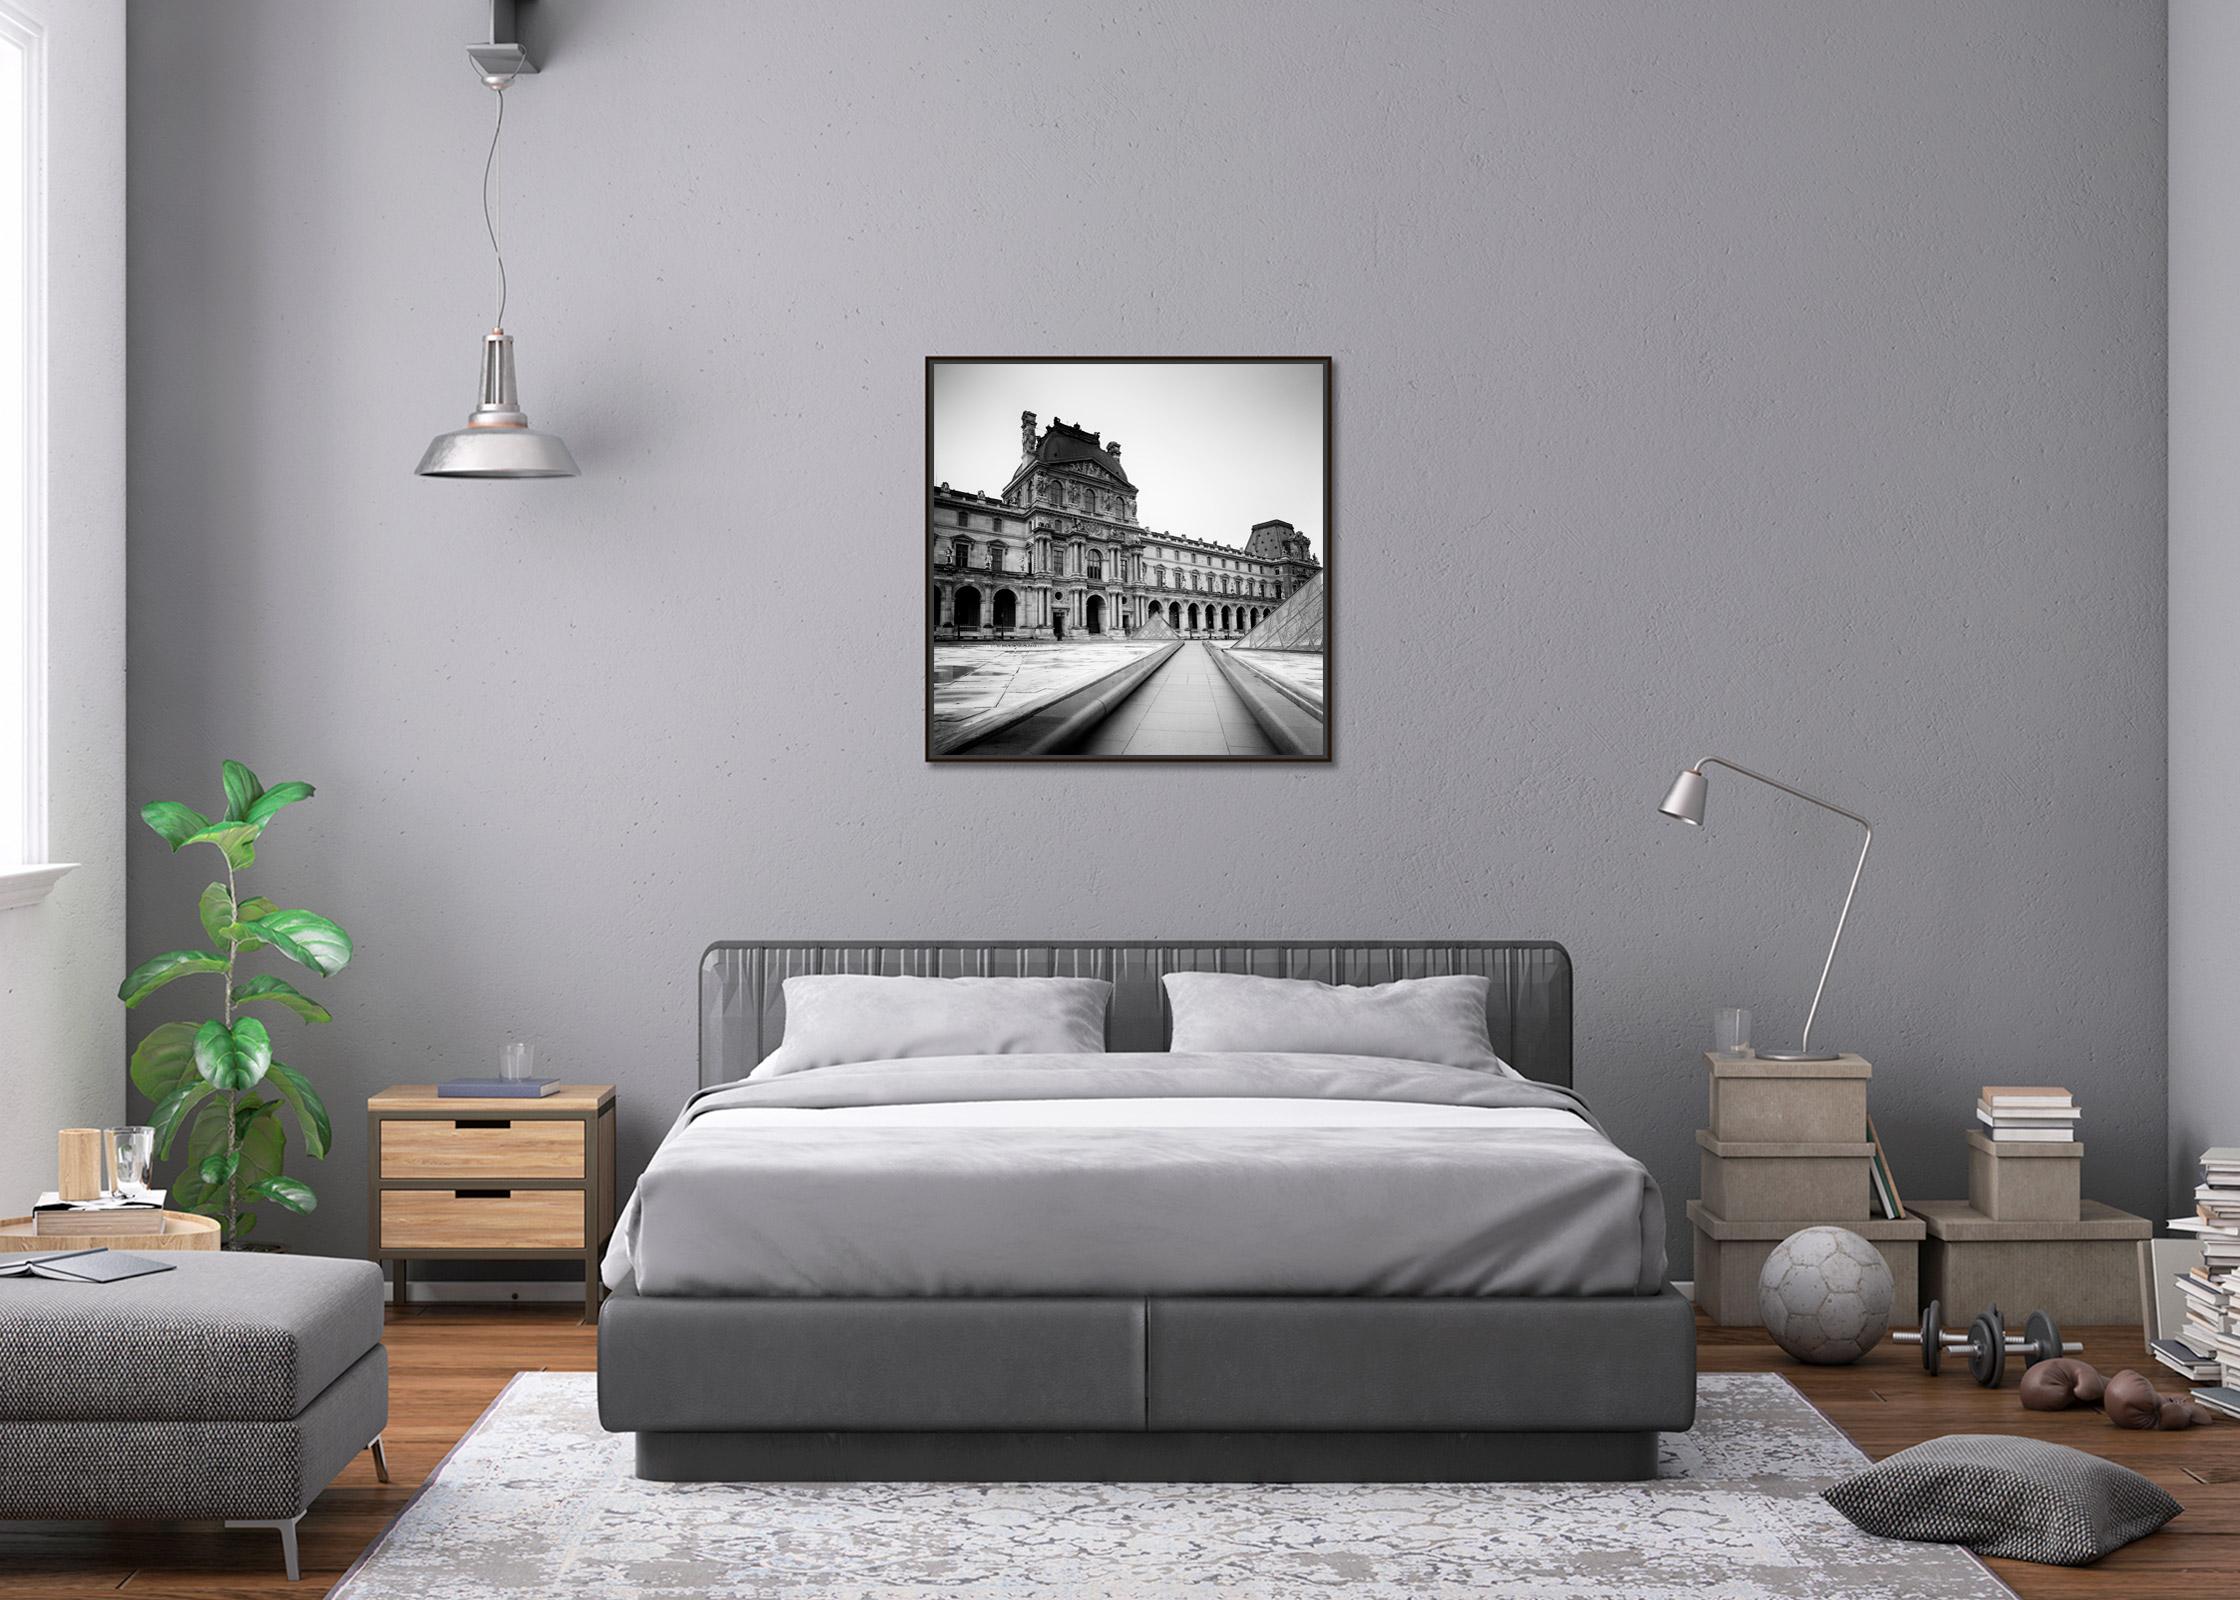 Pavillon Denon, Louvre, Paris, France, black and white cityscape art photography For Sale 1